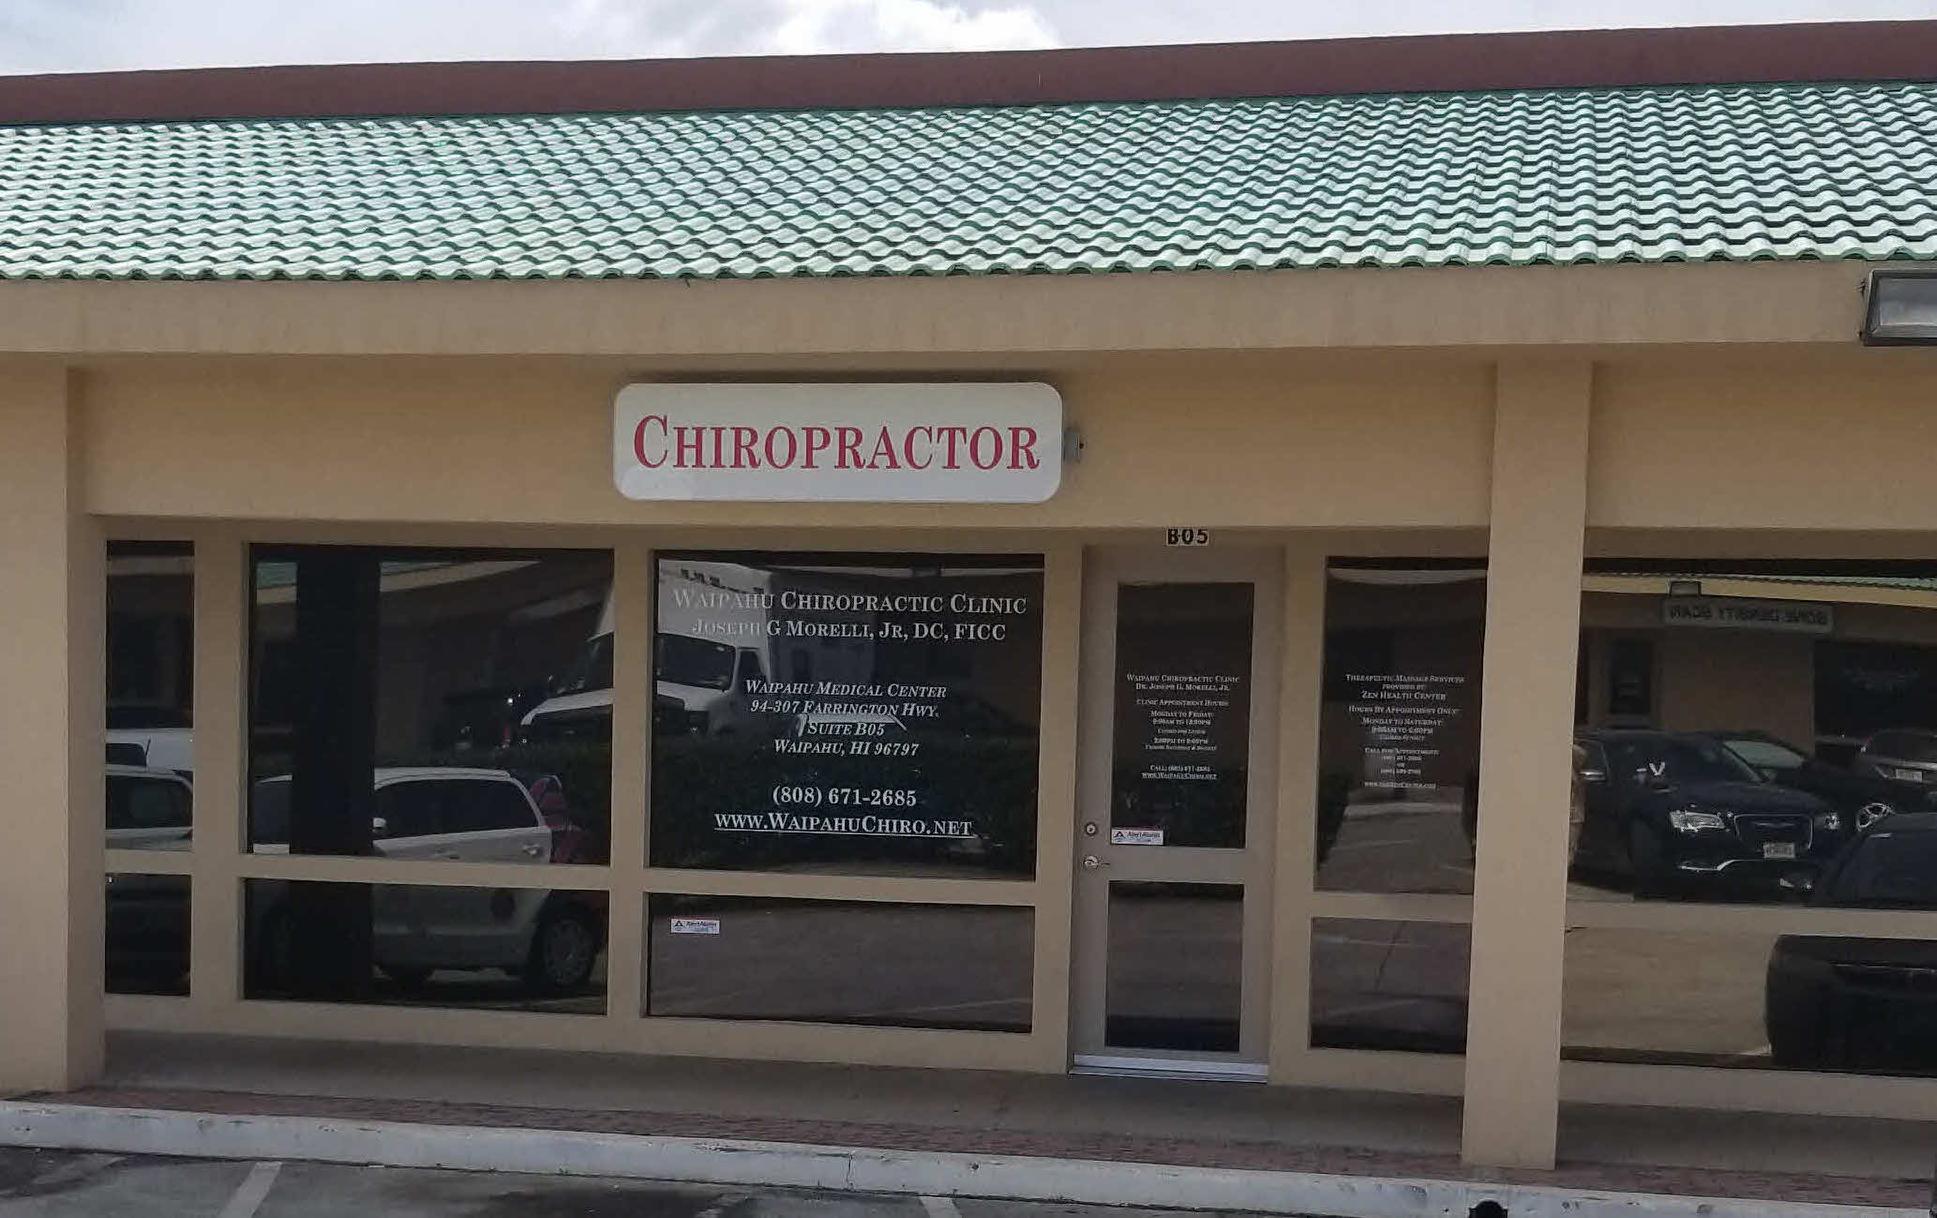 Waipahu Chiropractic Clinic